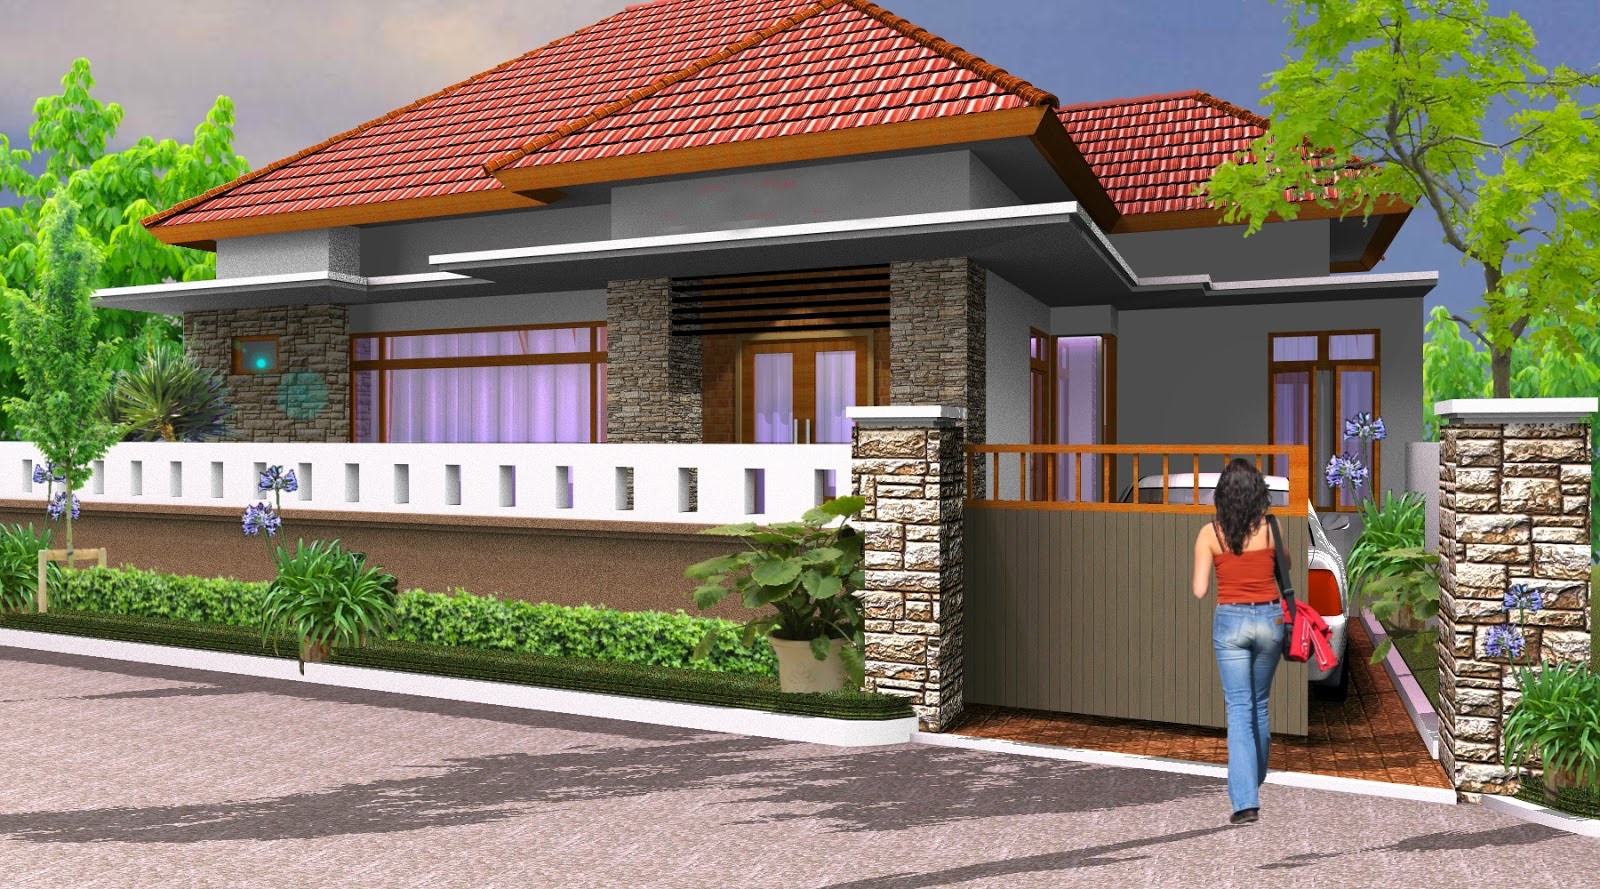 Gambar Desain Pagar Rumah Minimalis Terbaru 2015 Desain Rumah